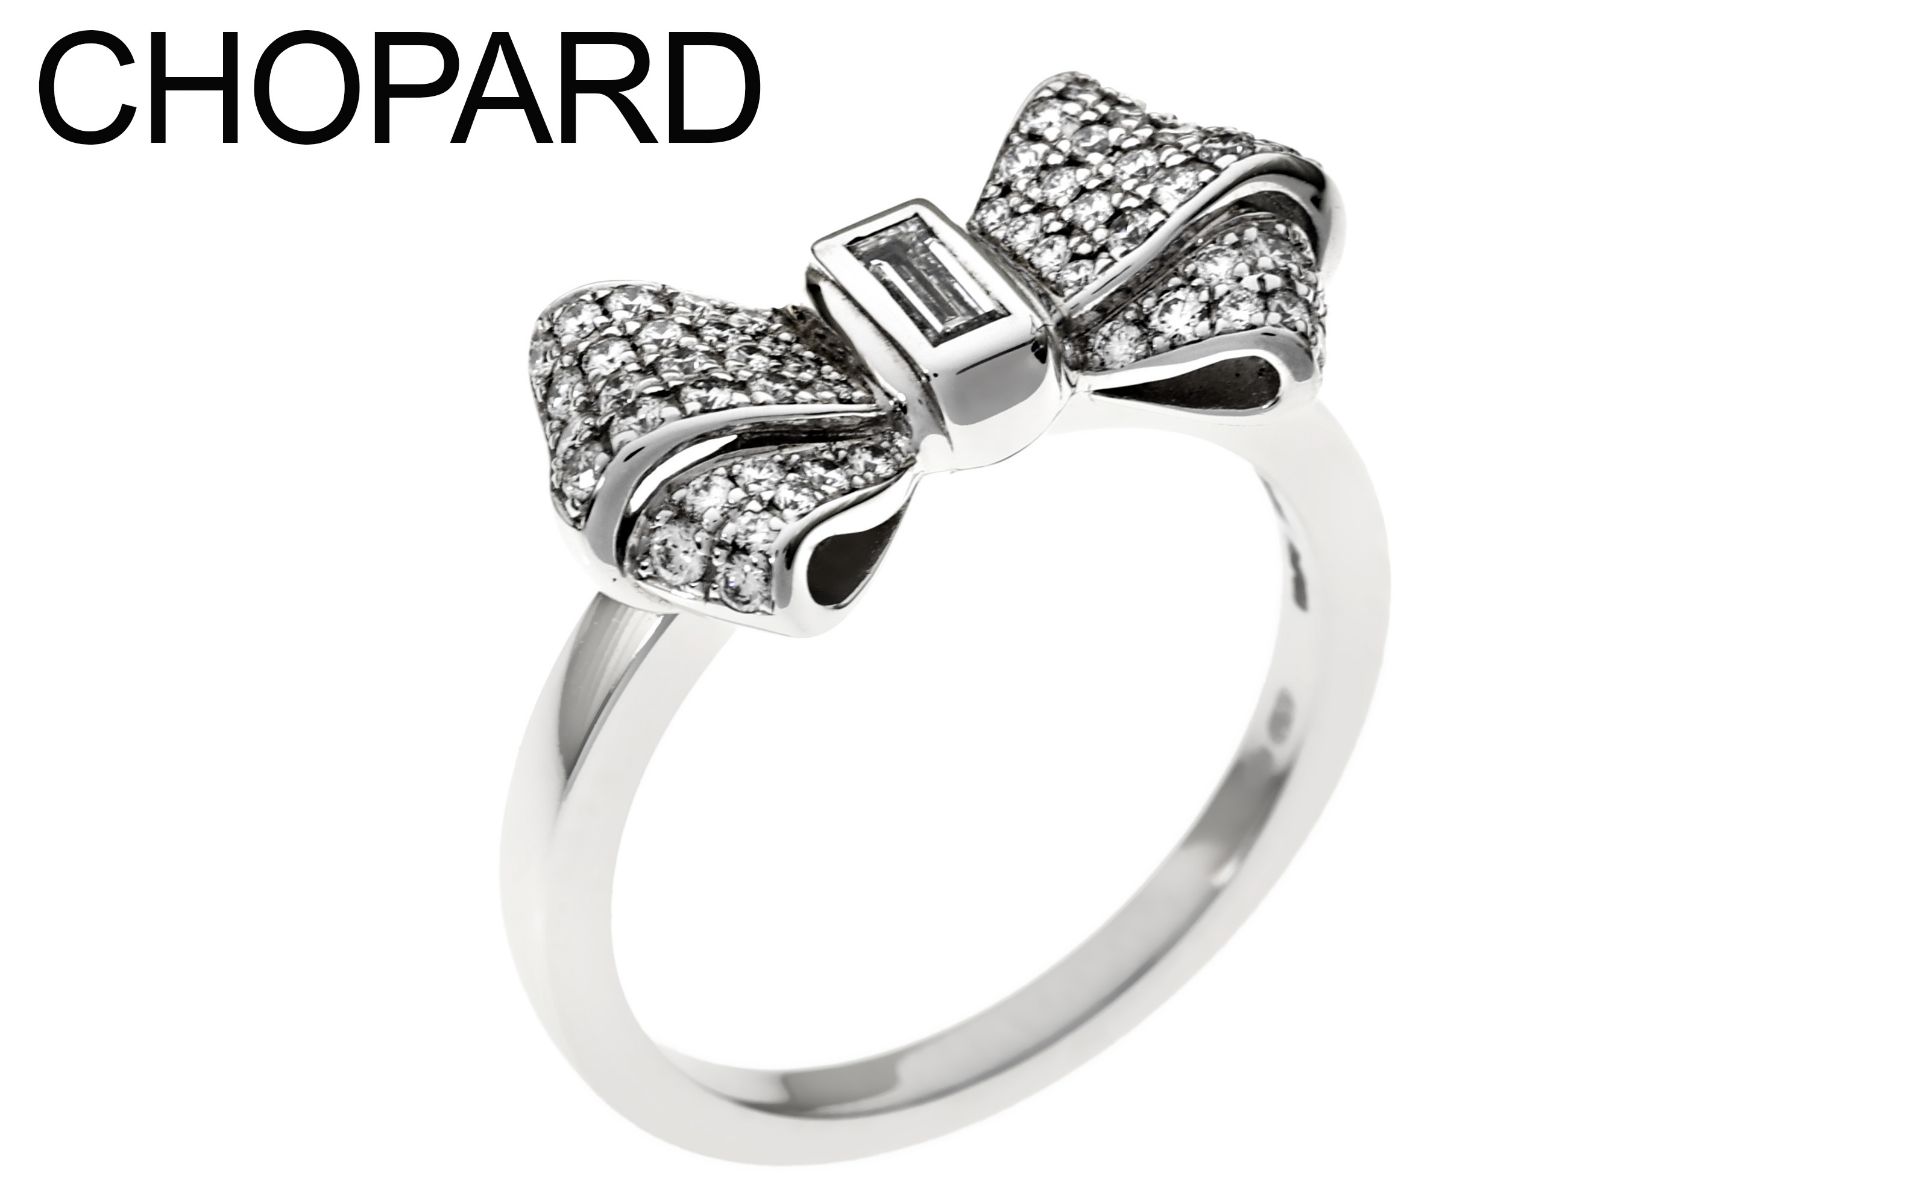 Chopard Ring Ref. 825020-1210 5.92g 750/- Weissgold mit Diamanten. mit Zertifikat. Ringgroesse ca. 5